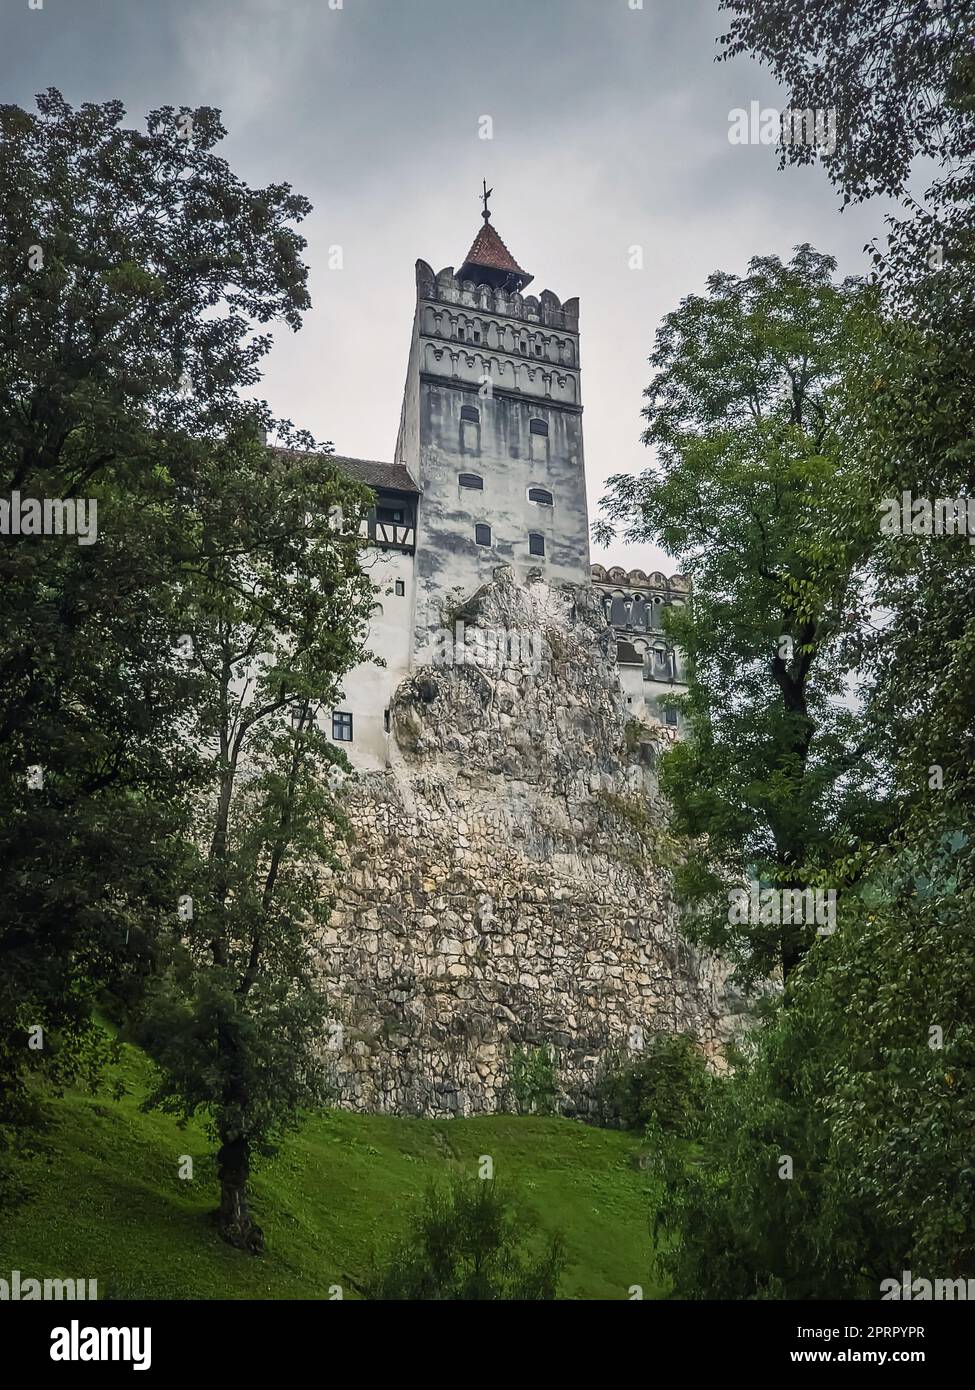 La fortezza medievale di Bran conosciuta come castello di Dracula in Transilvania, Romania. Storica roccaforte in stile sassone nel cuore dei monti Carpazi Foto Stock